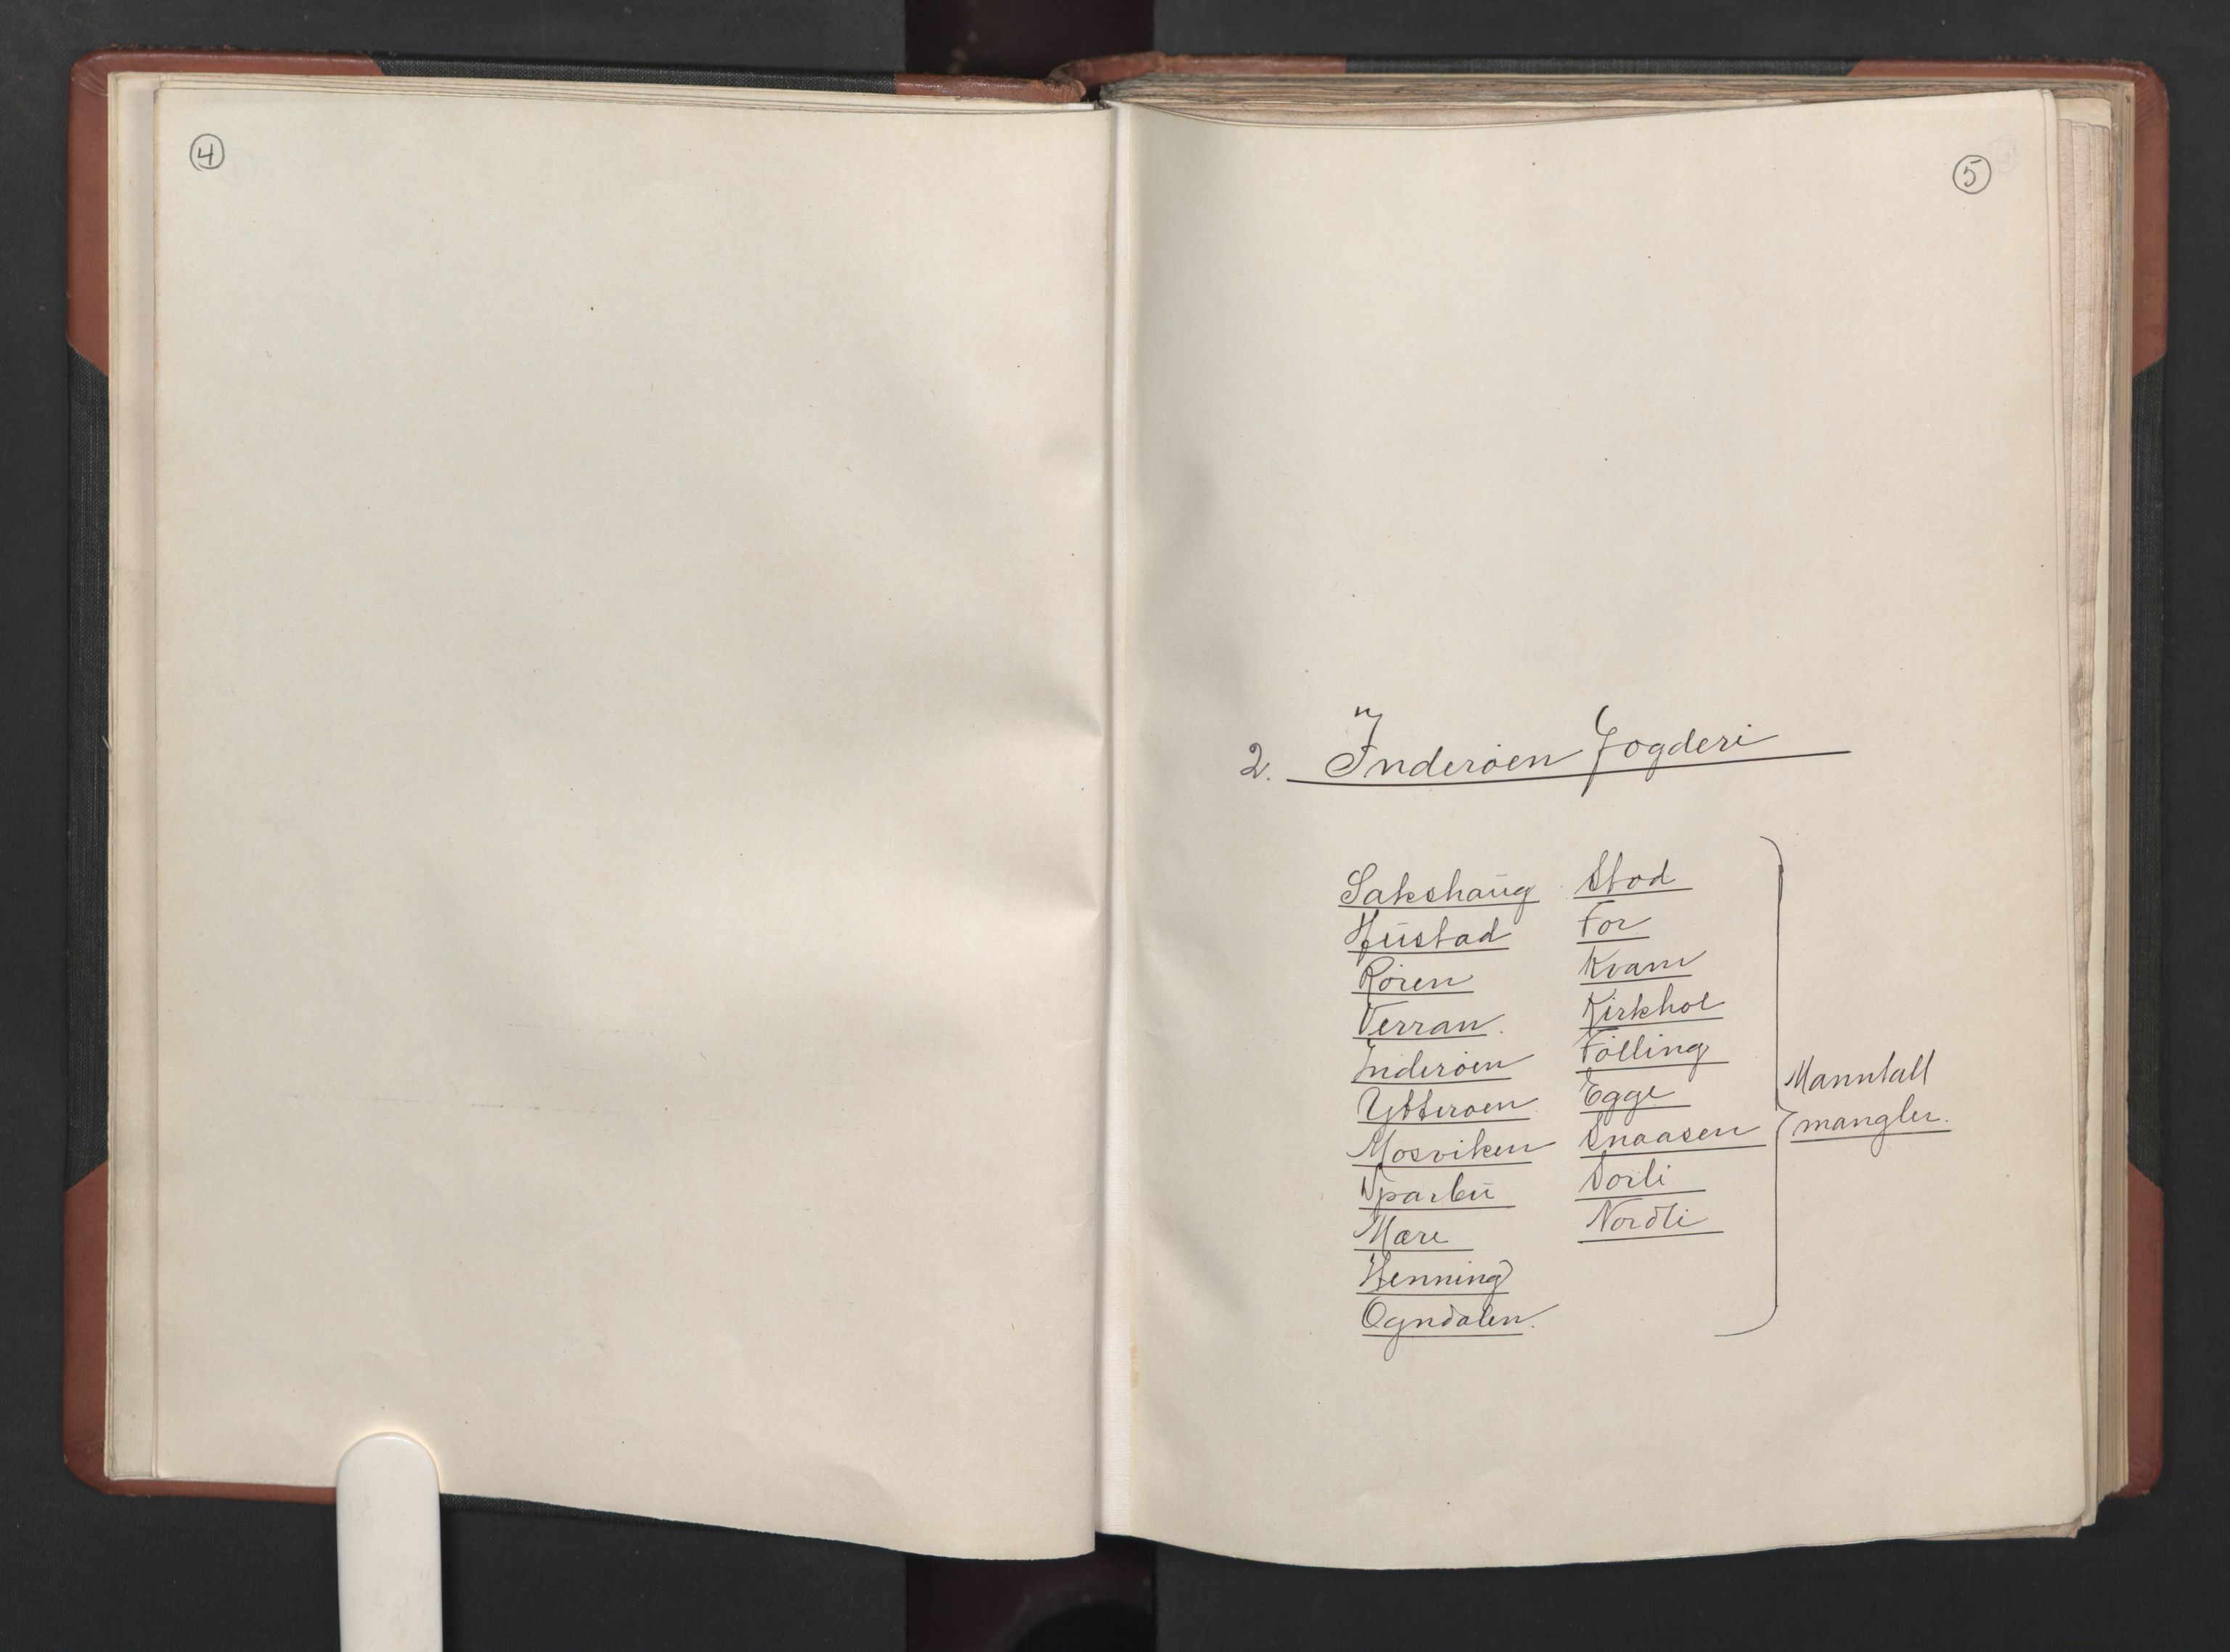 RA, Bailiff's Census 1664-1666, no. 19: Fosen fogderi, Inderøy fogderi, Selbu fogderi, Namdal fogderi and Stjørdal fogderi, 1664-1665, p. 4-5